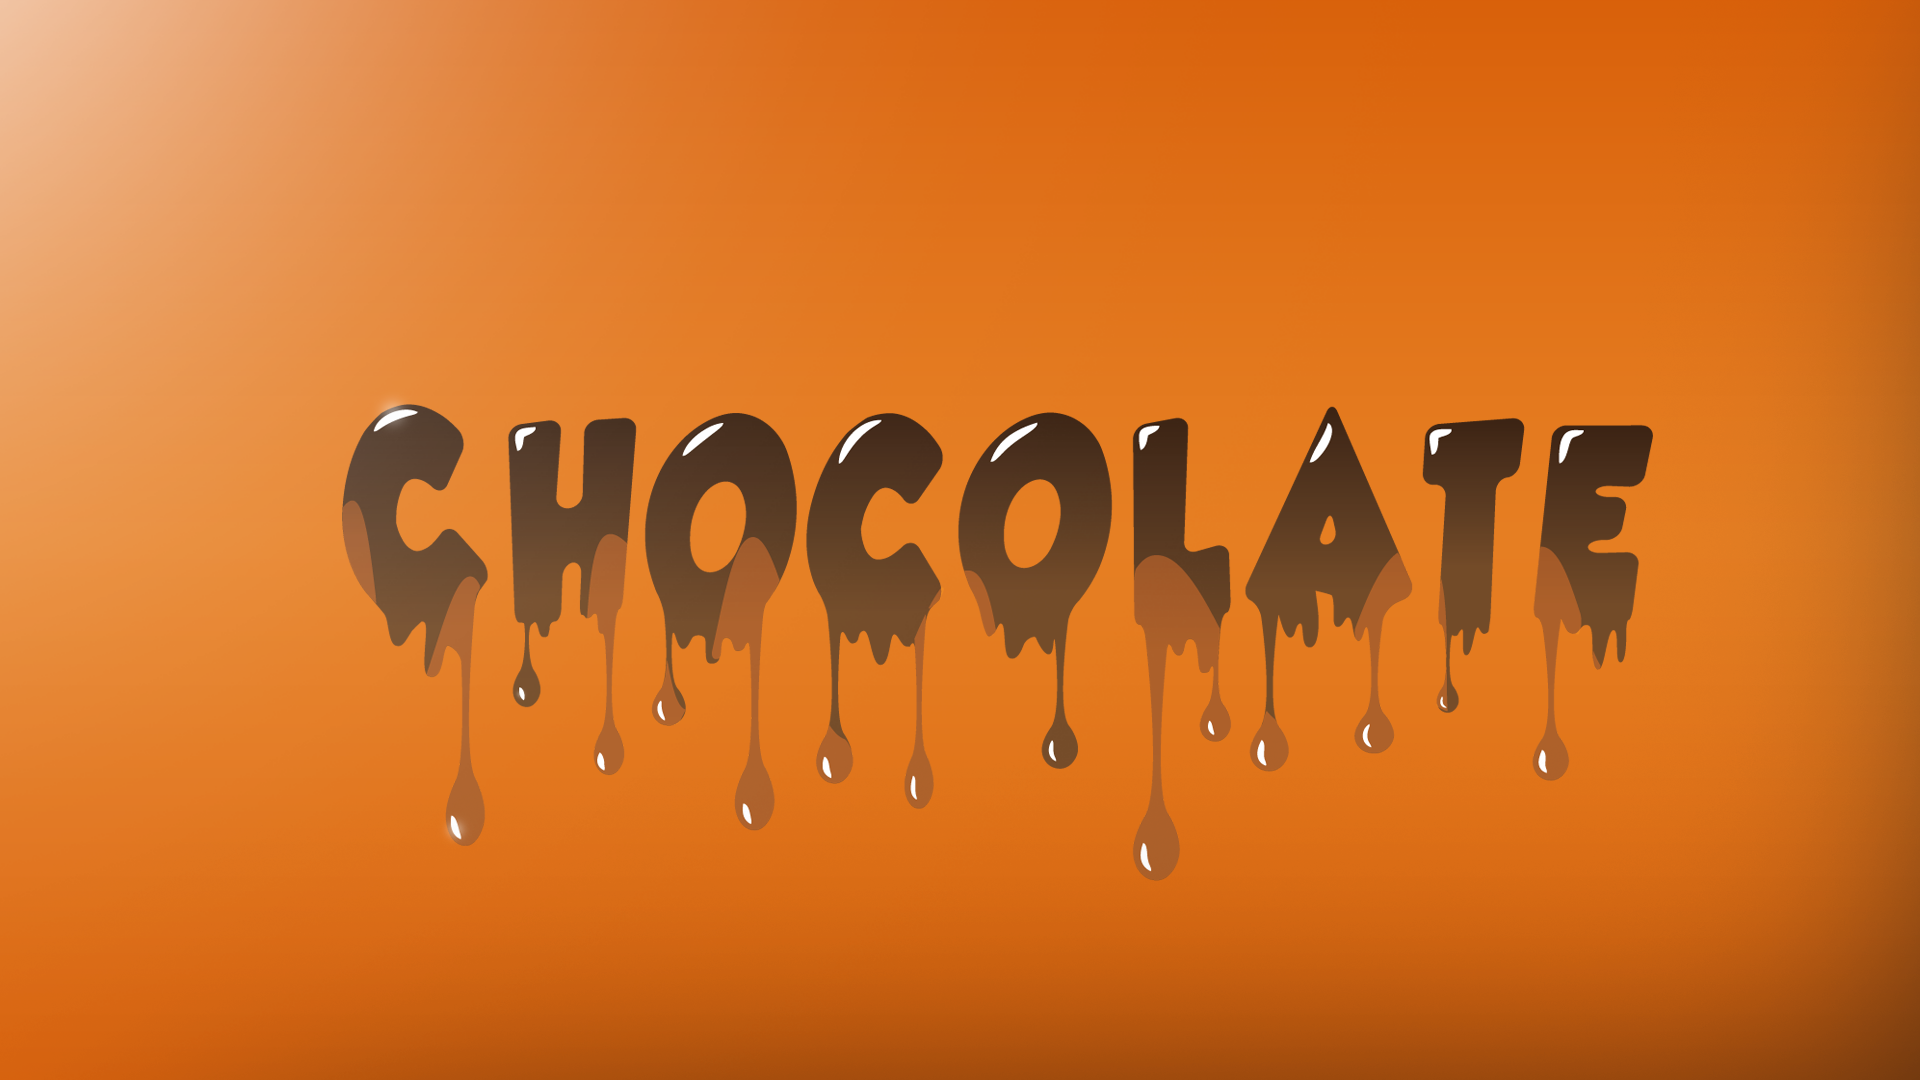 General 1920x1080 chocolate IT design splashes orange text typography brown gradient orange background